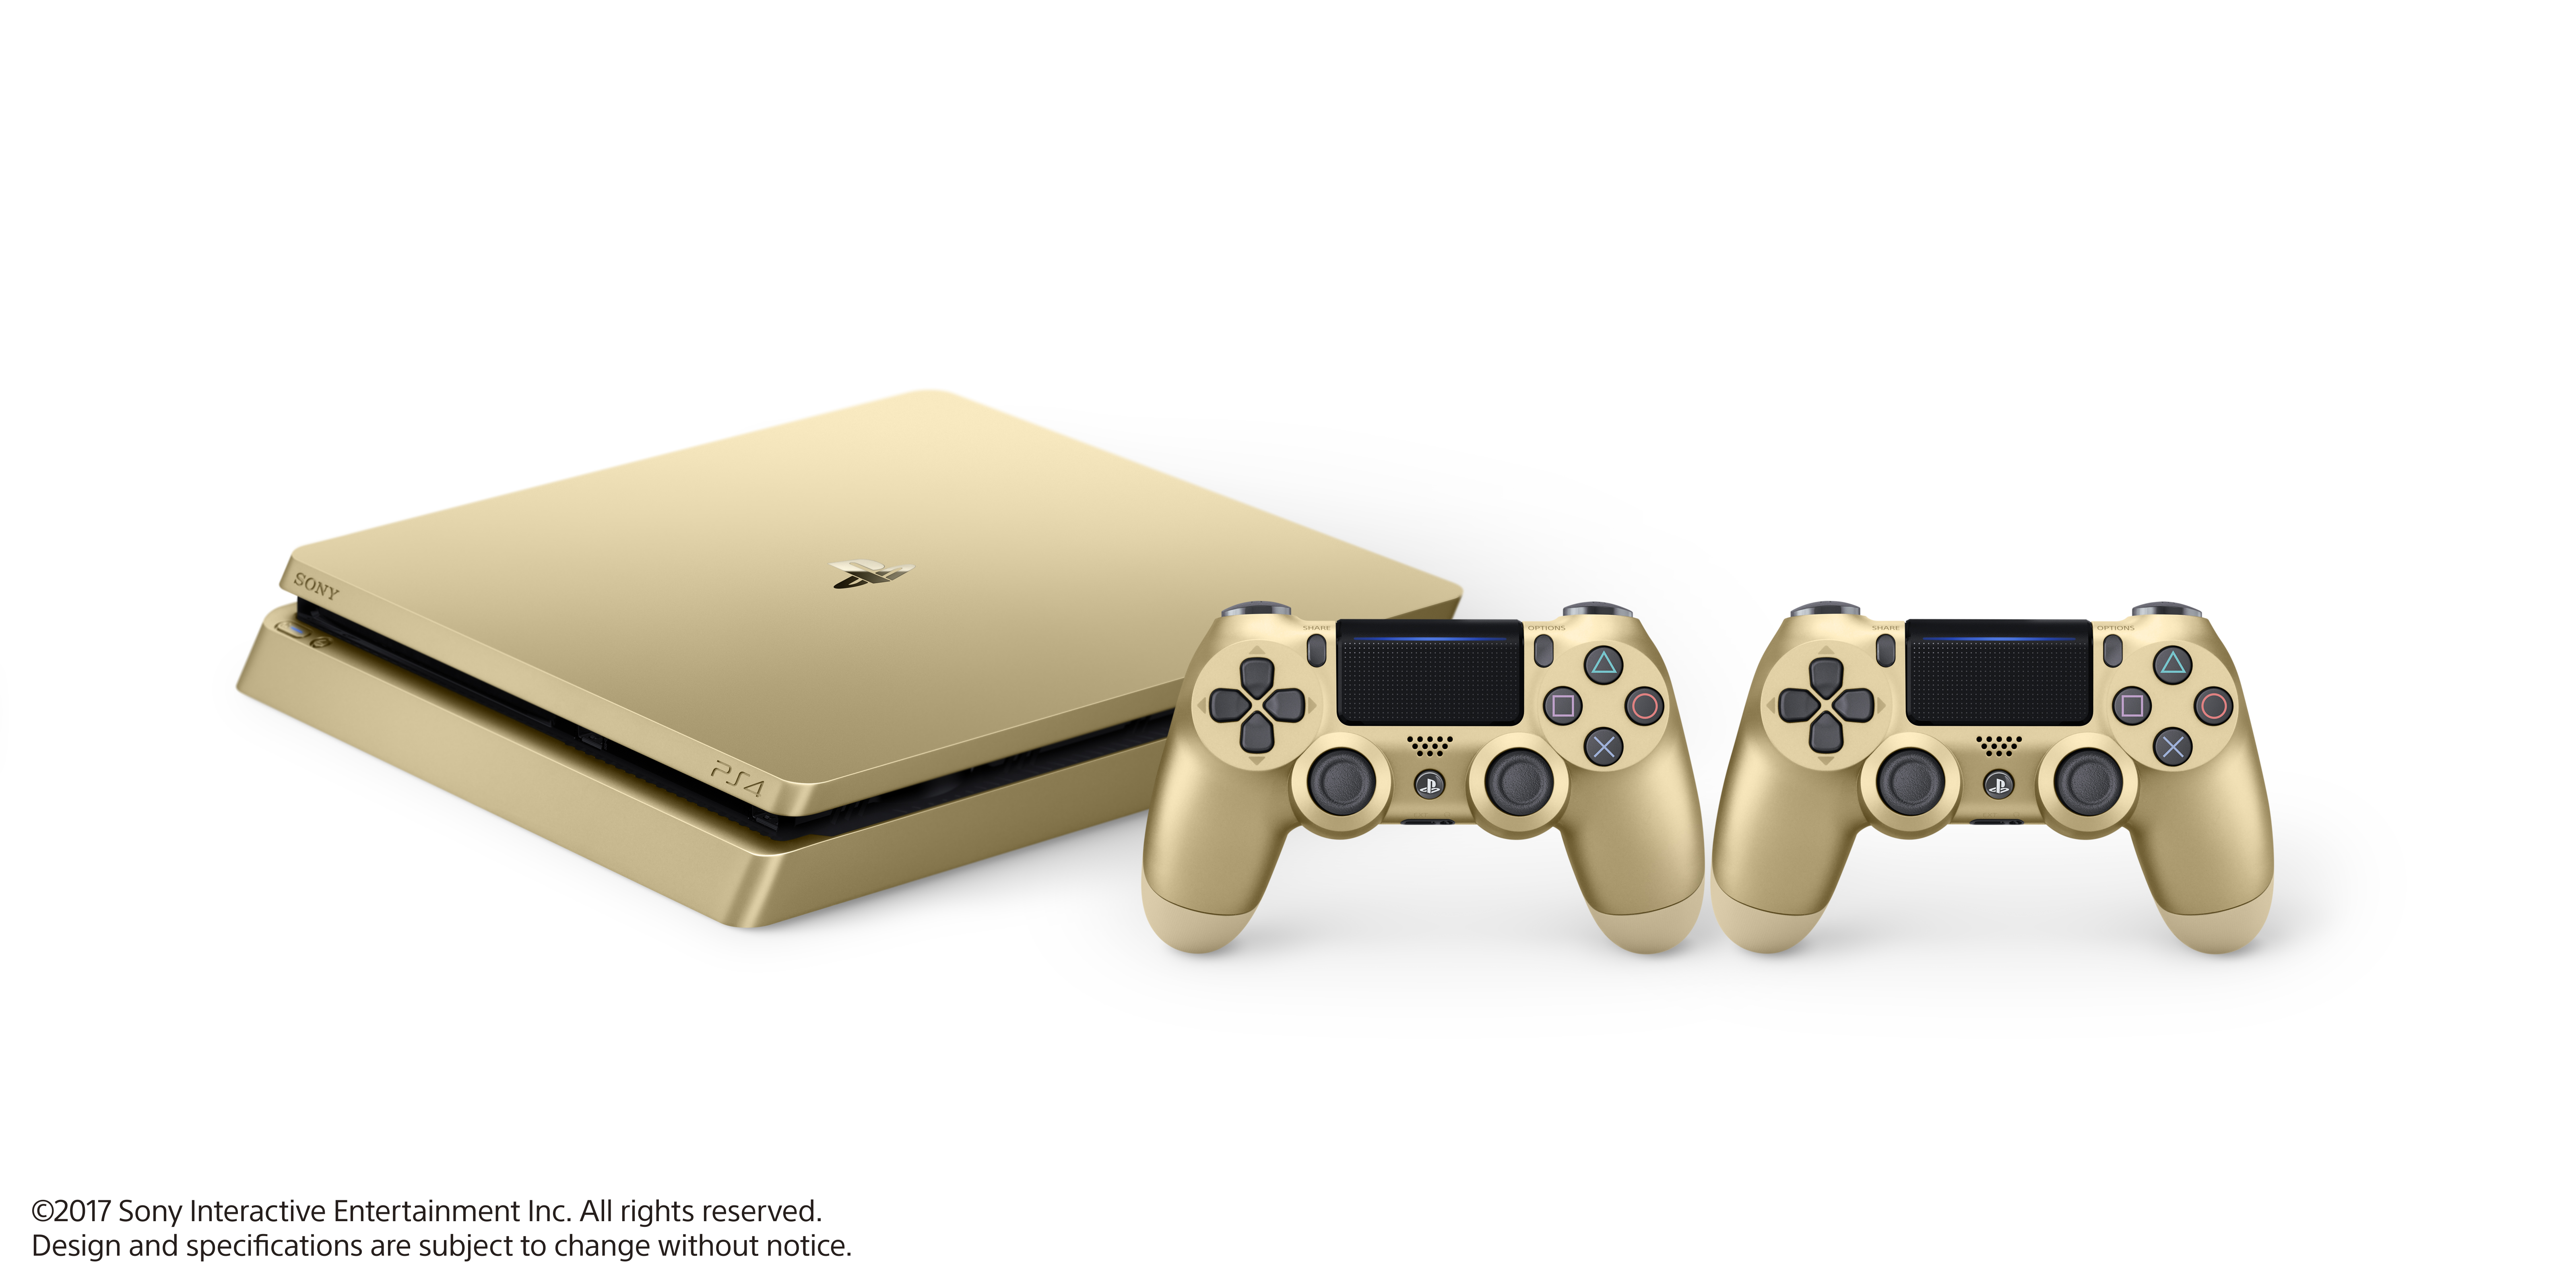 La Playstation 4 Slim Gold et Silver annoncée (6)